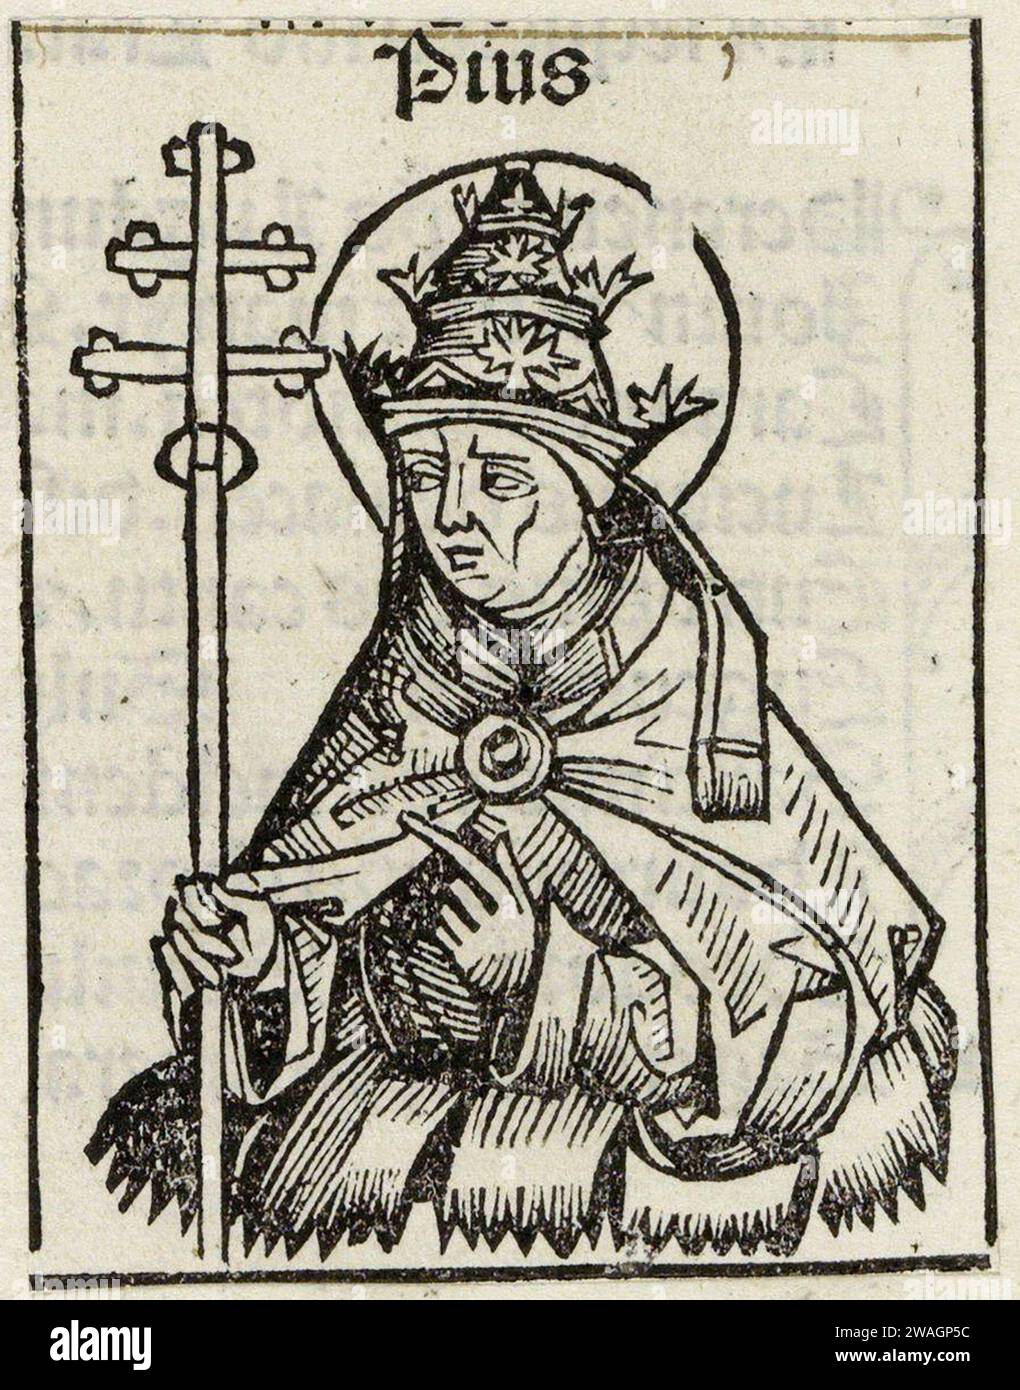 Eine Illustration von Papst Pius I. aus dem Jahr 1493, der von 140 bis 155 Päpste war. Er war der zehnte Papst, und er war es, der befahl, dass Ostern immer auf einen Sonntag fallen sollte. Stockfoto